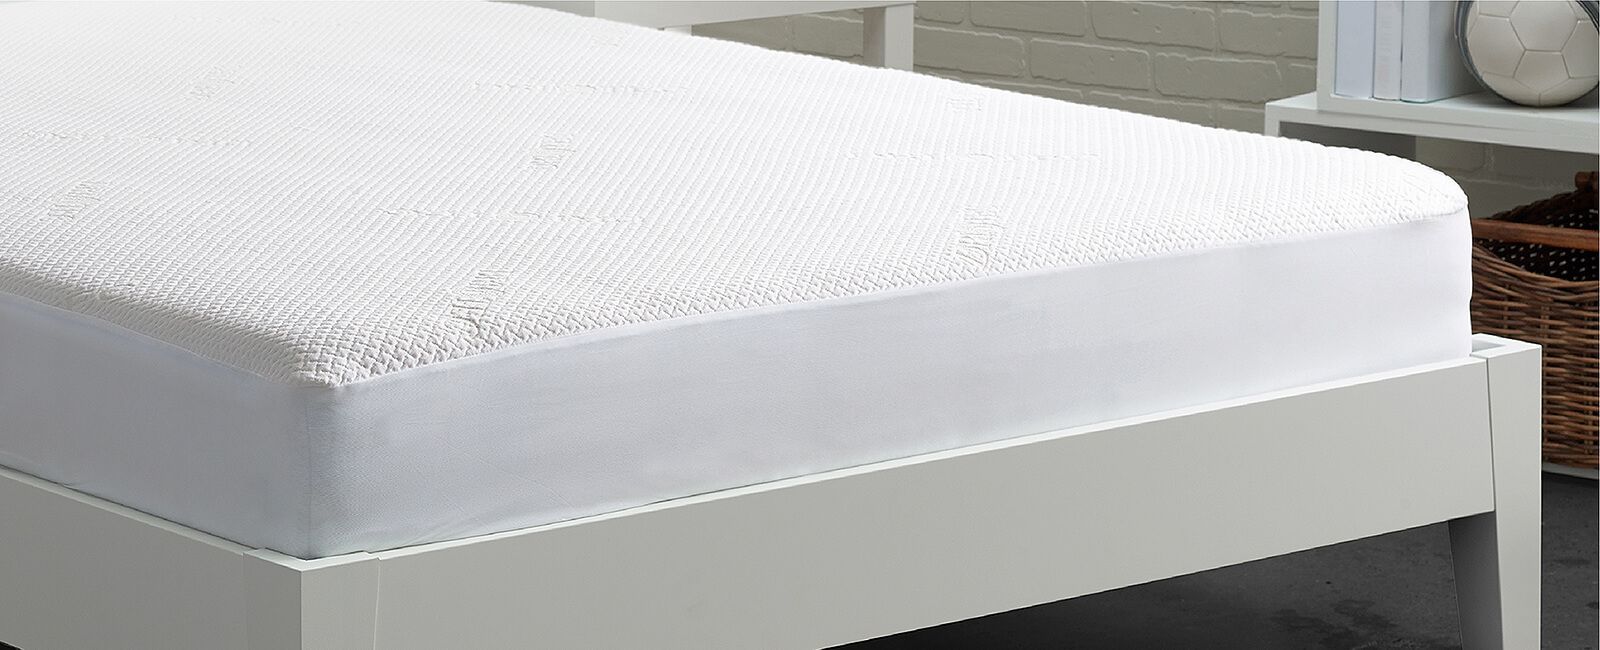 bedgear dri-tec mattress protector reviews